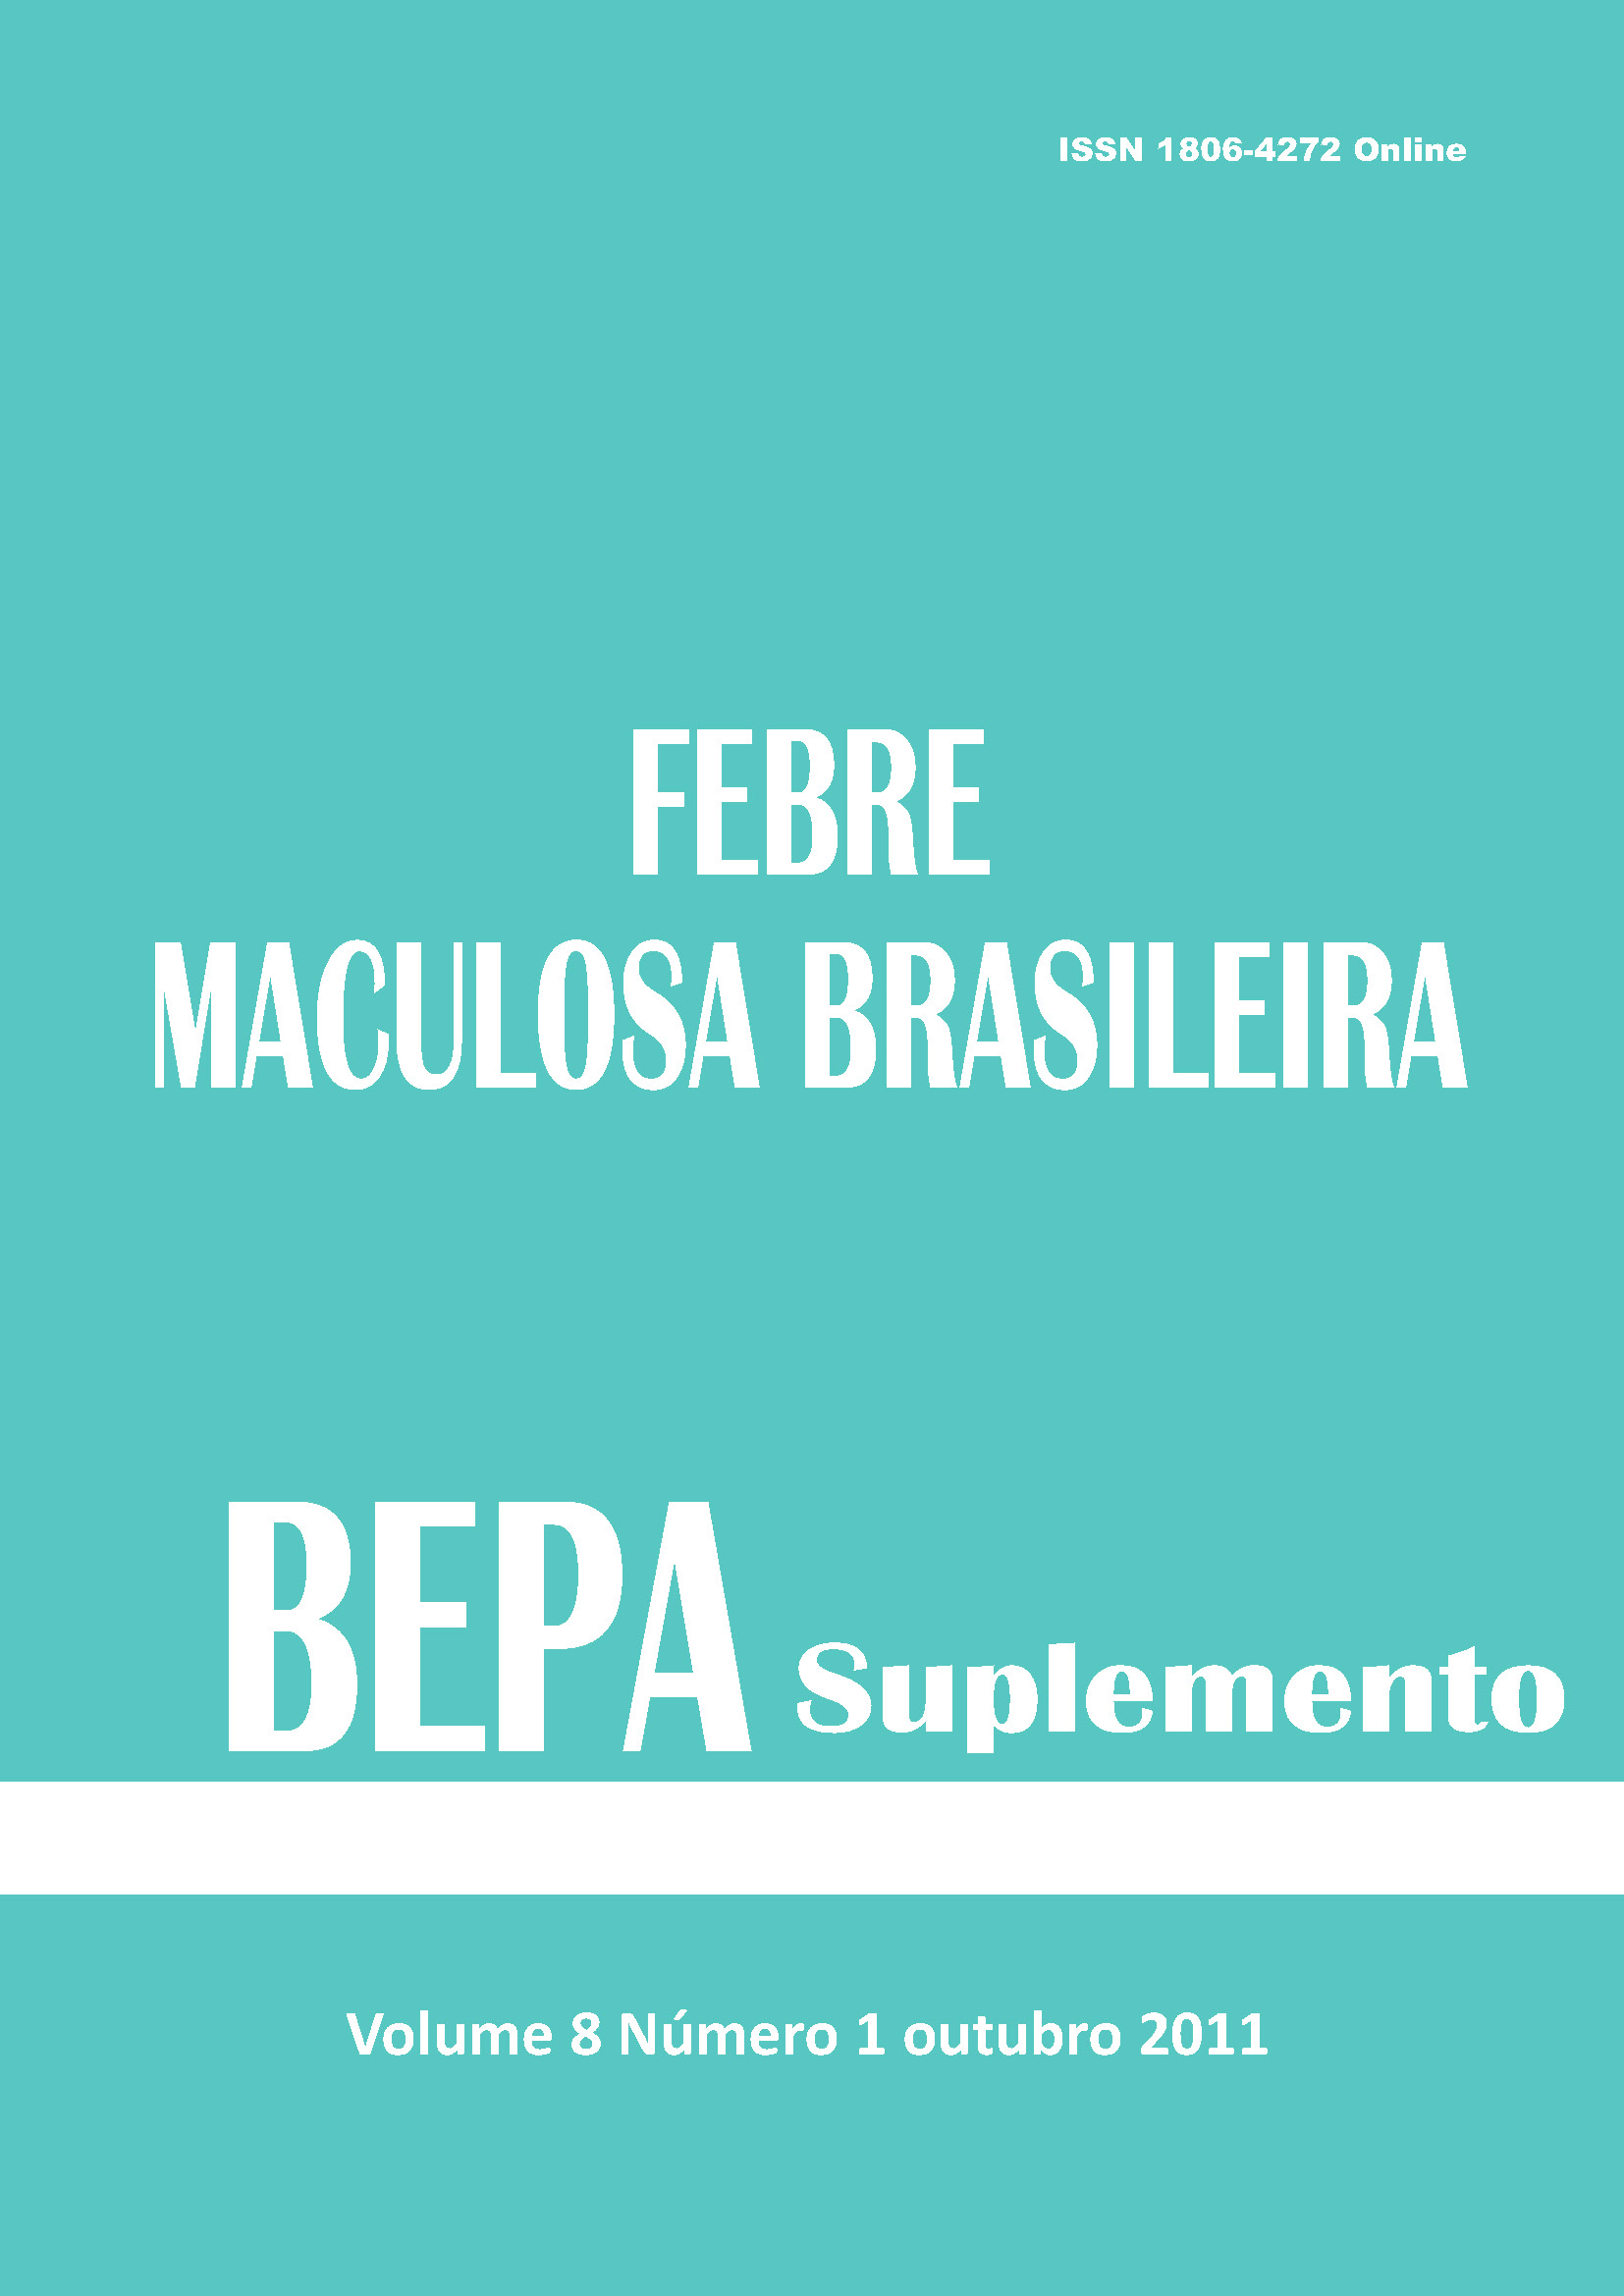 					Ver Vol. 8 Núm. Supl. (2011): Suplemento 1 - Febre Maculosa Brasileira 
				